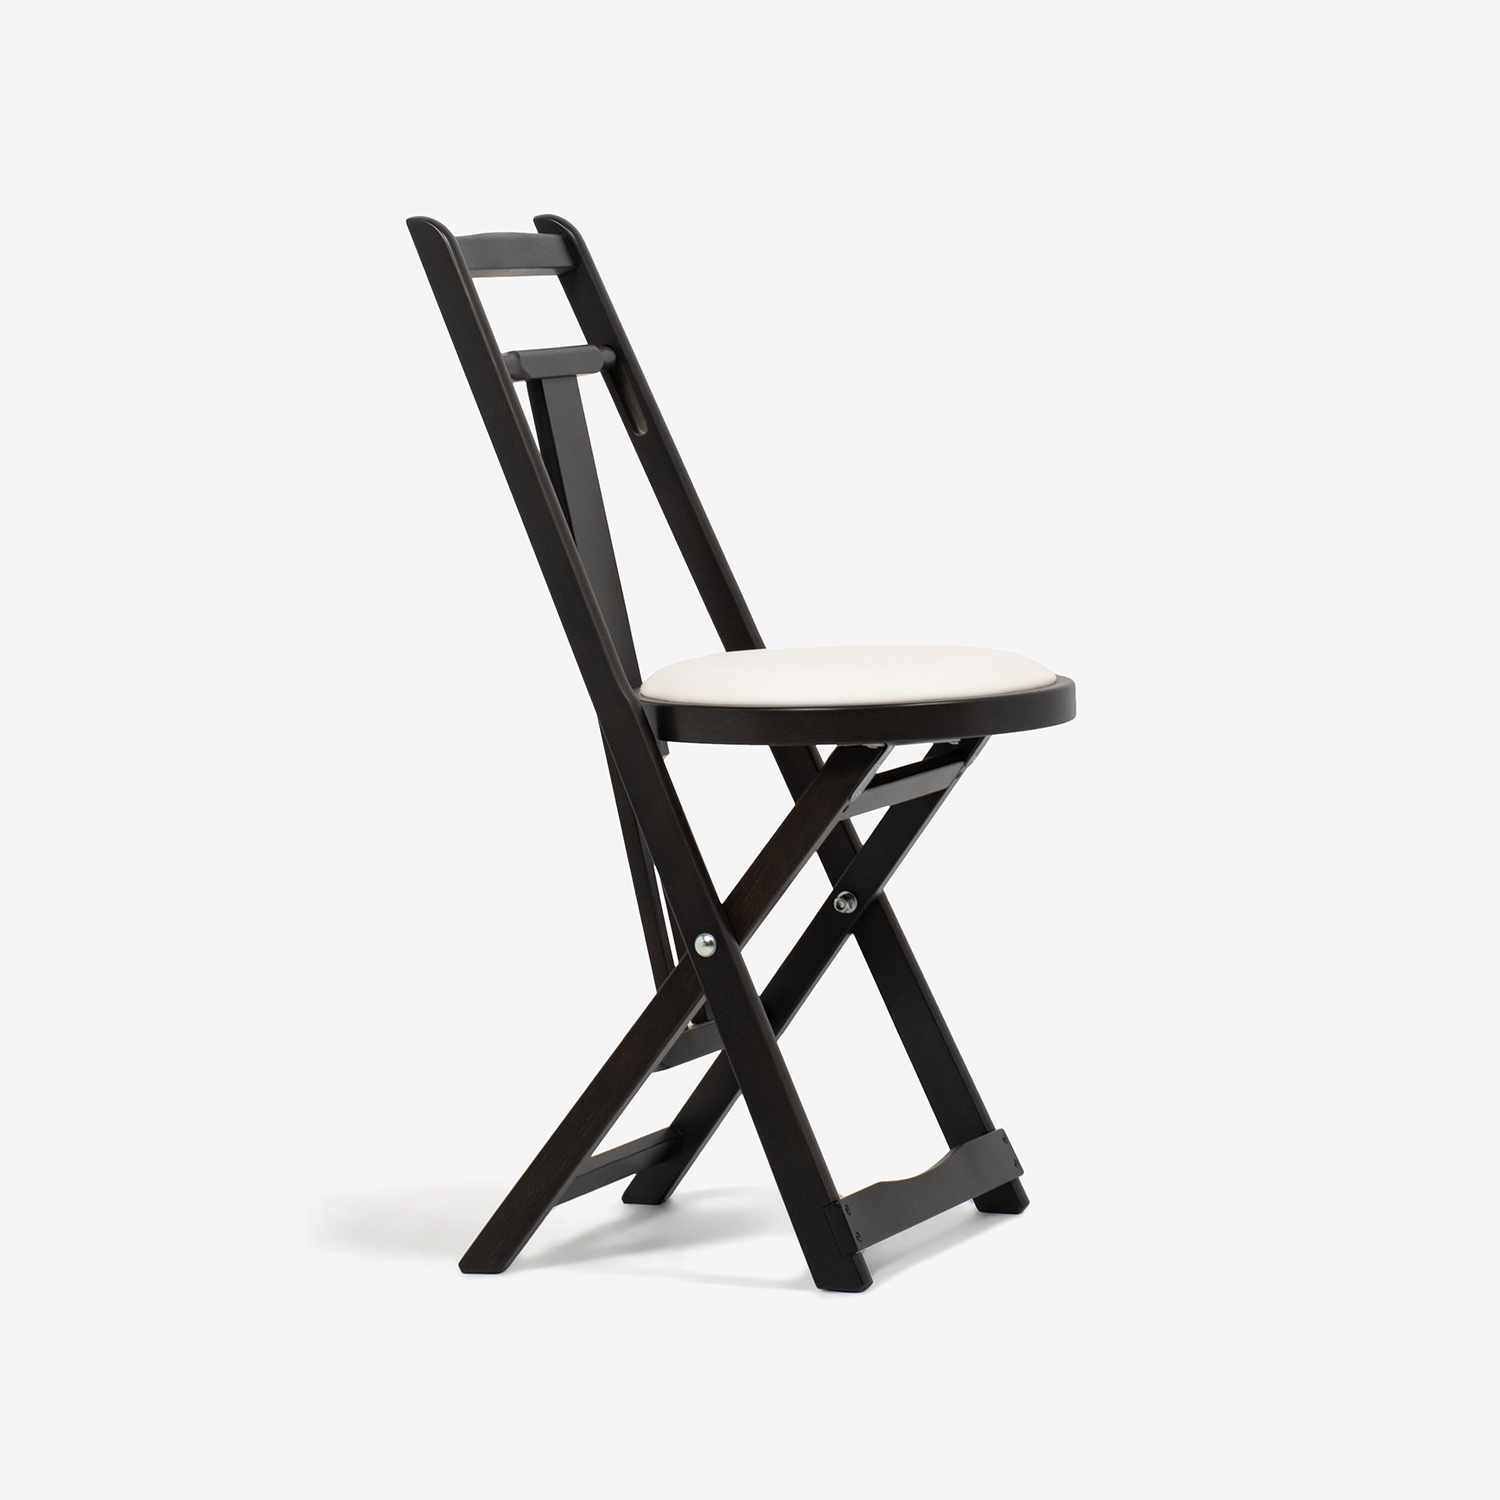 折りたたみ椅子「KC-1」木部ブナ材ダークブラウン色 座PVCアイボリー色【決算セールのため30%OFF】